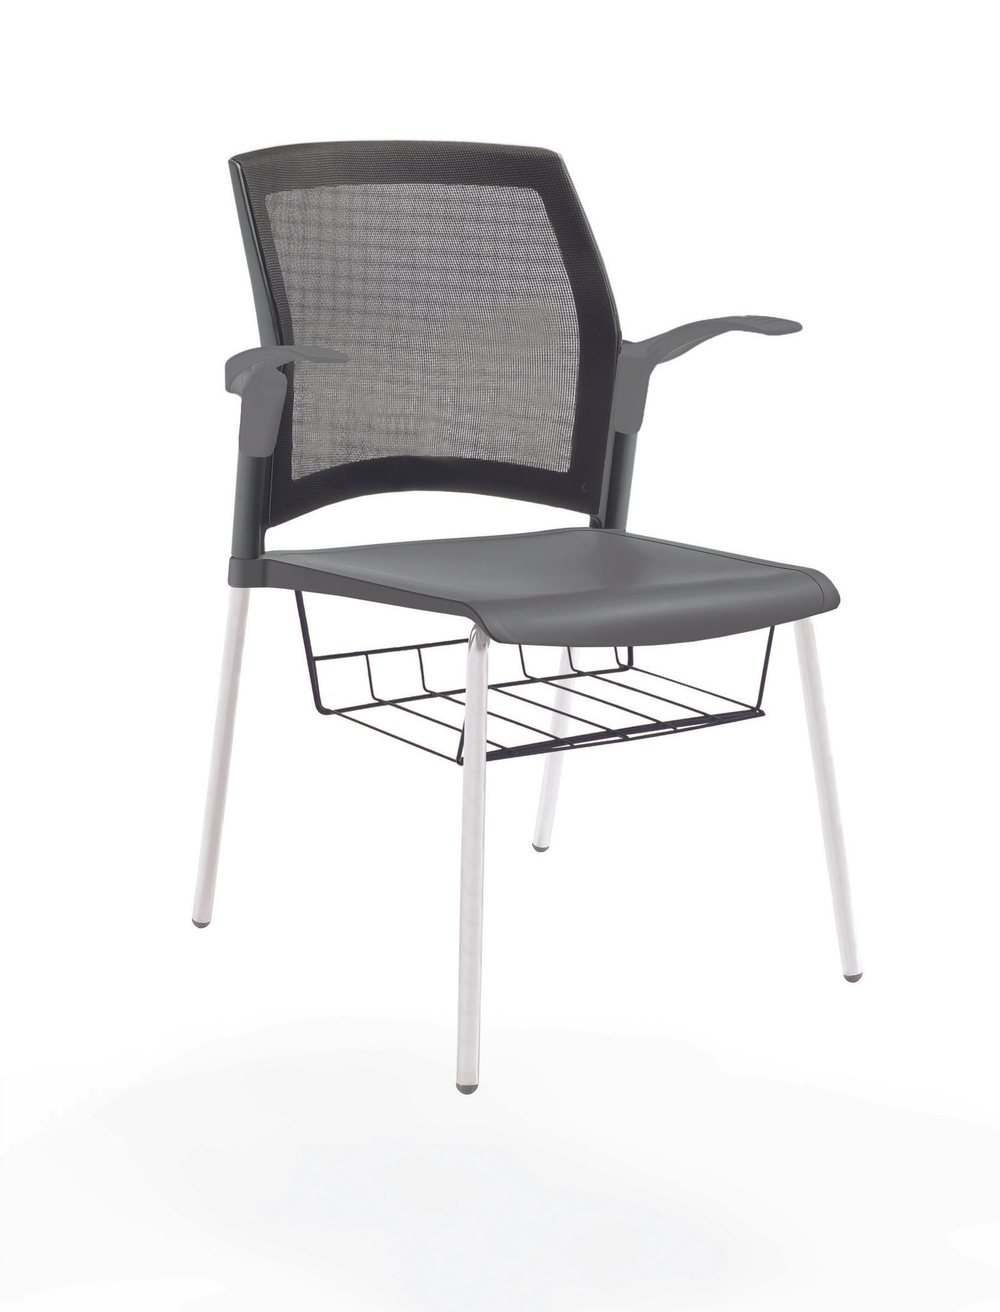 стул Rewind на 4 ногах, каркас белый, пластик серый, спинка-сетка, с открытыми подлокотниками, с подседельной корзиной